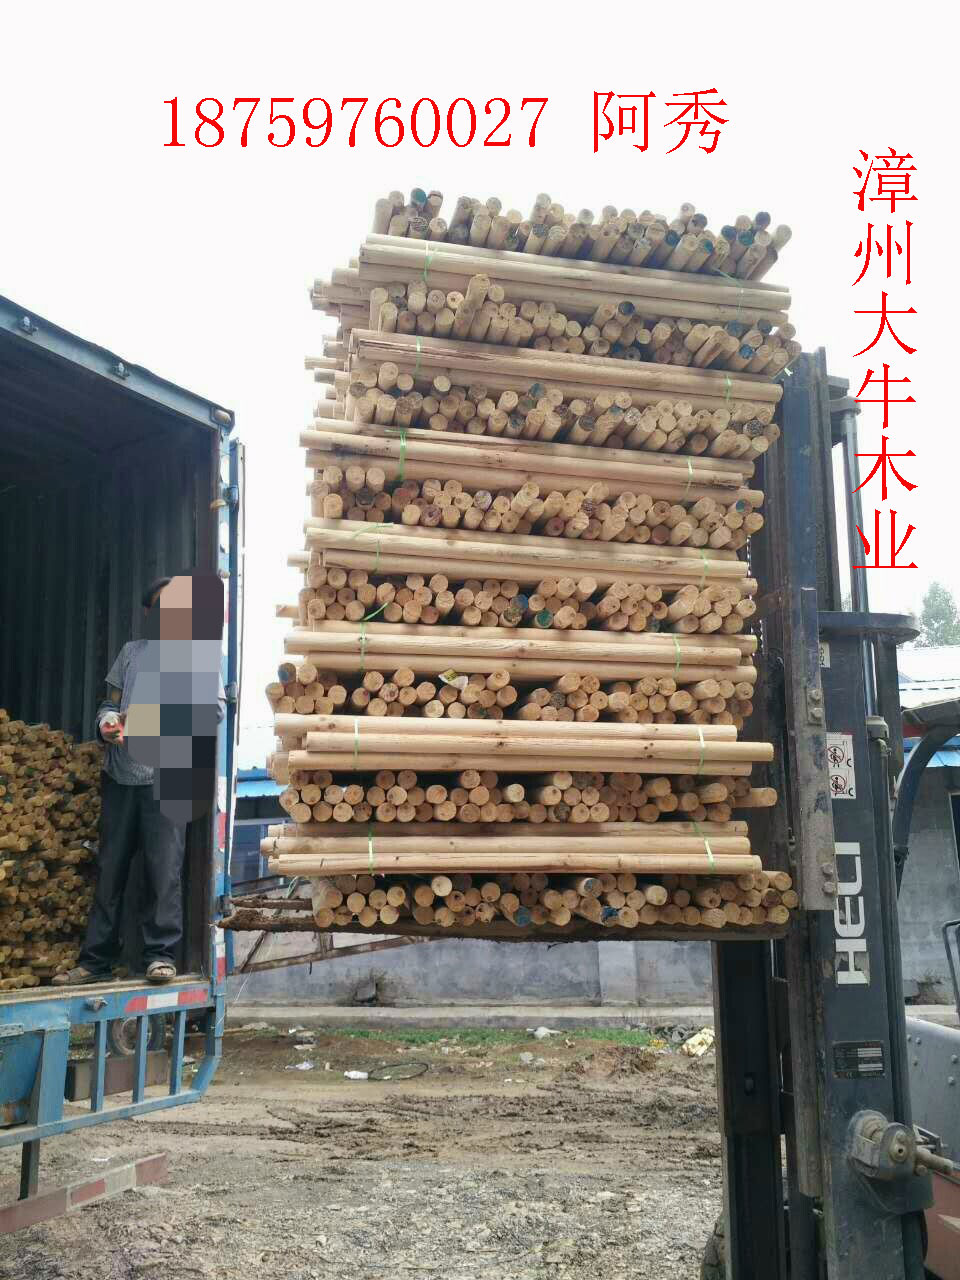 福建漳州 优质松木木芯厂家 松木柱子批发 松木木芯 松木柱子加工